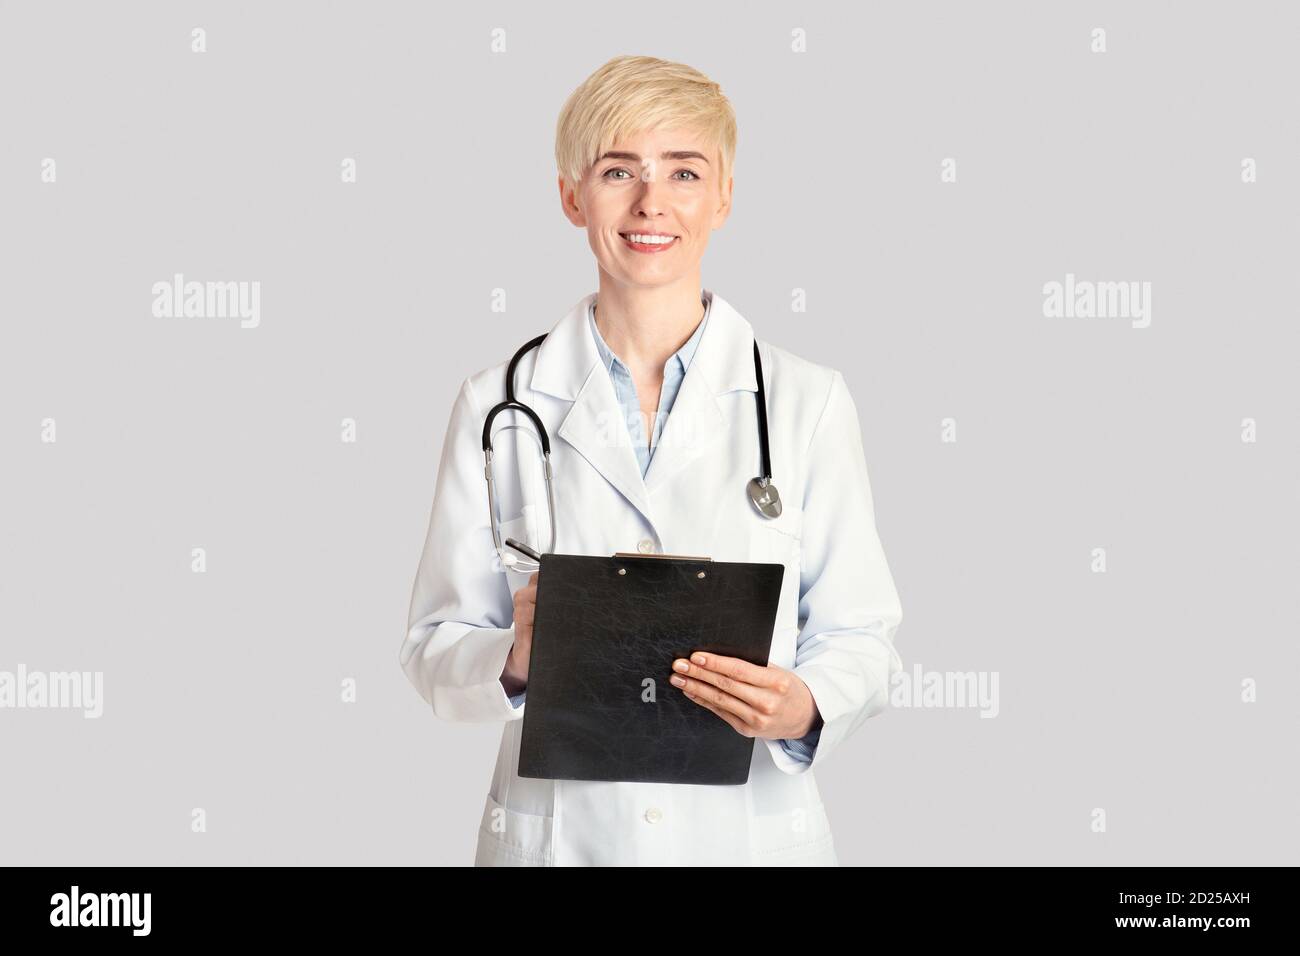 Medizinische Berufe, Gesundheitswesen und Prävention Konzept. Lächelnde Erwachsene Frau macht Notizen in Tablette Stockfoto